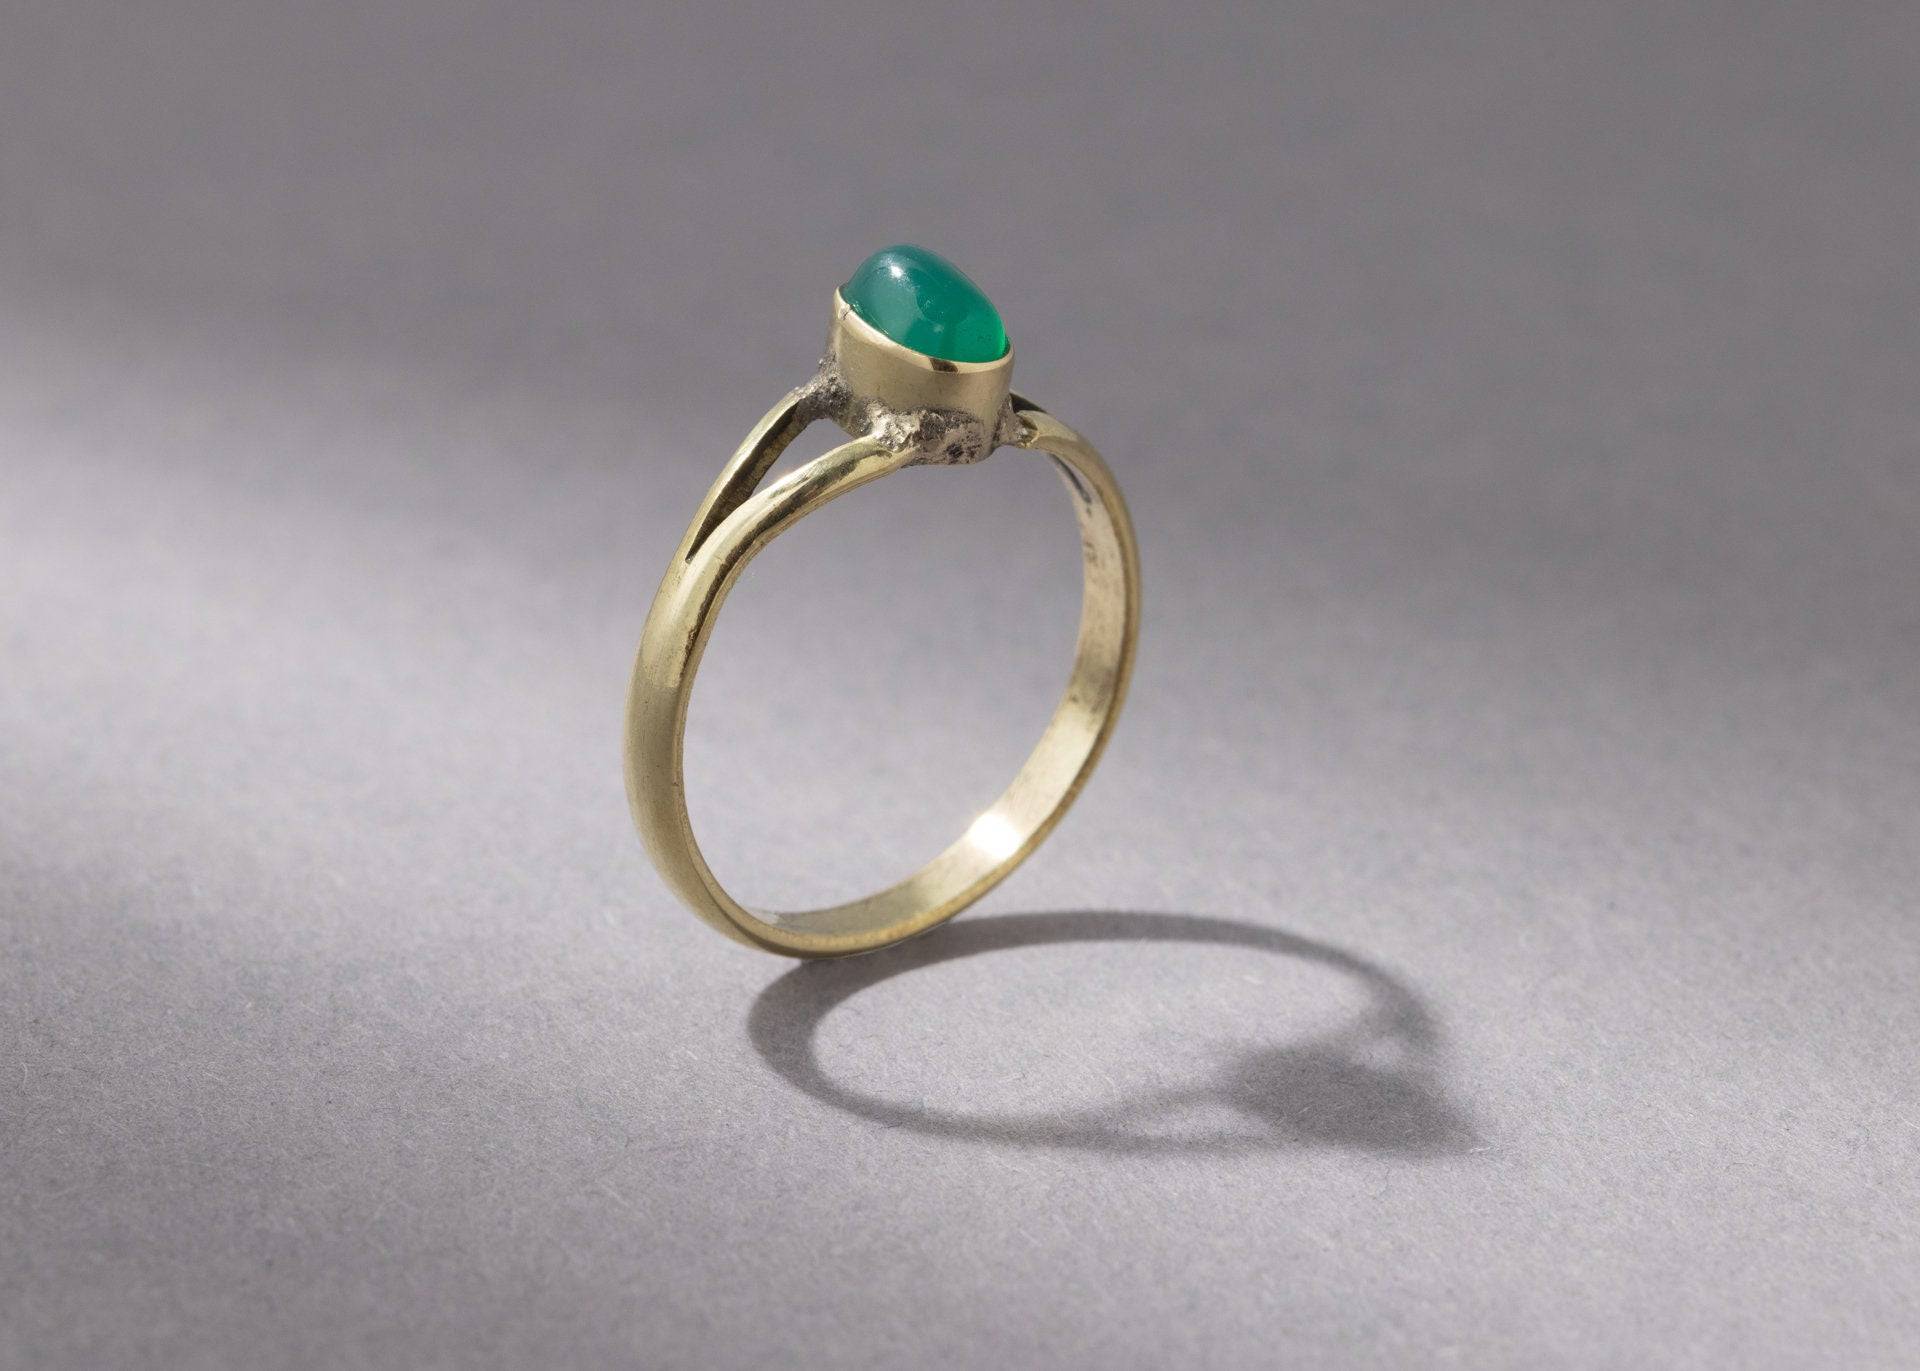 Kleiner grüner Onyx Ring mit ovalem Stein handgemacht - NooeBerlin